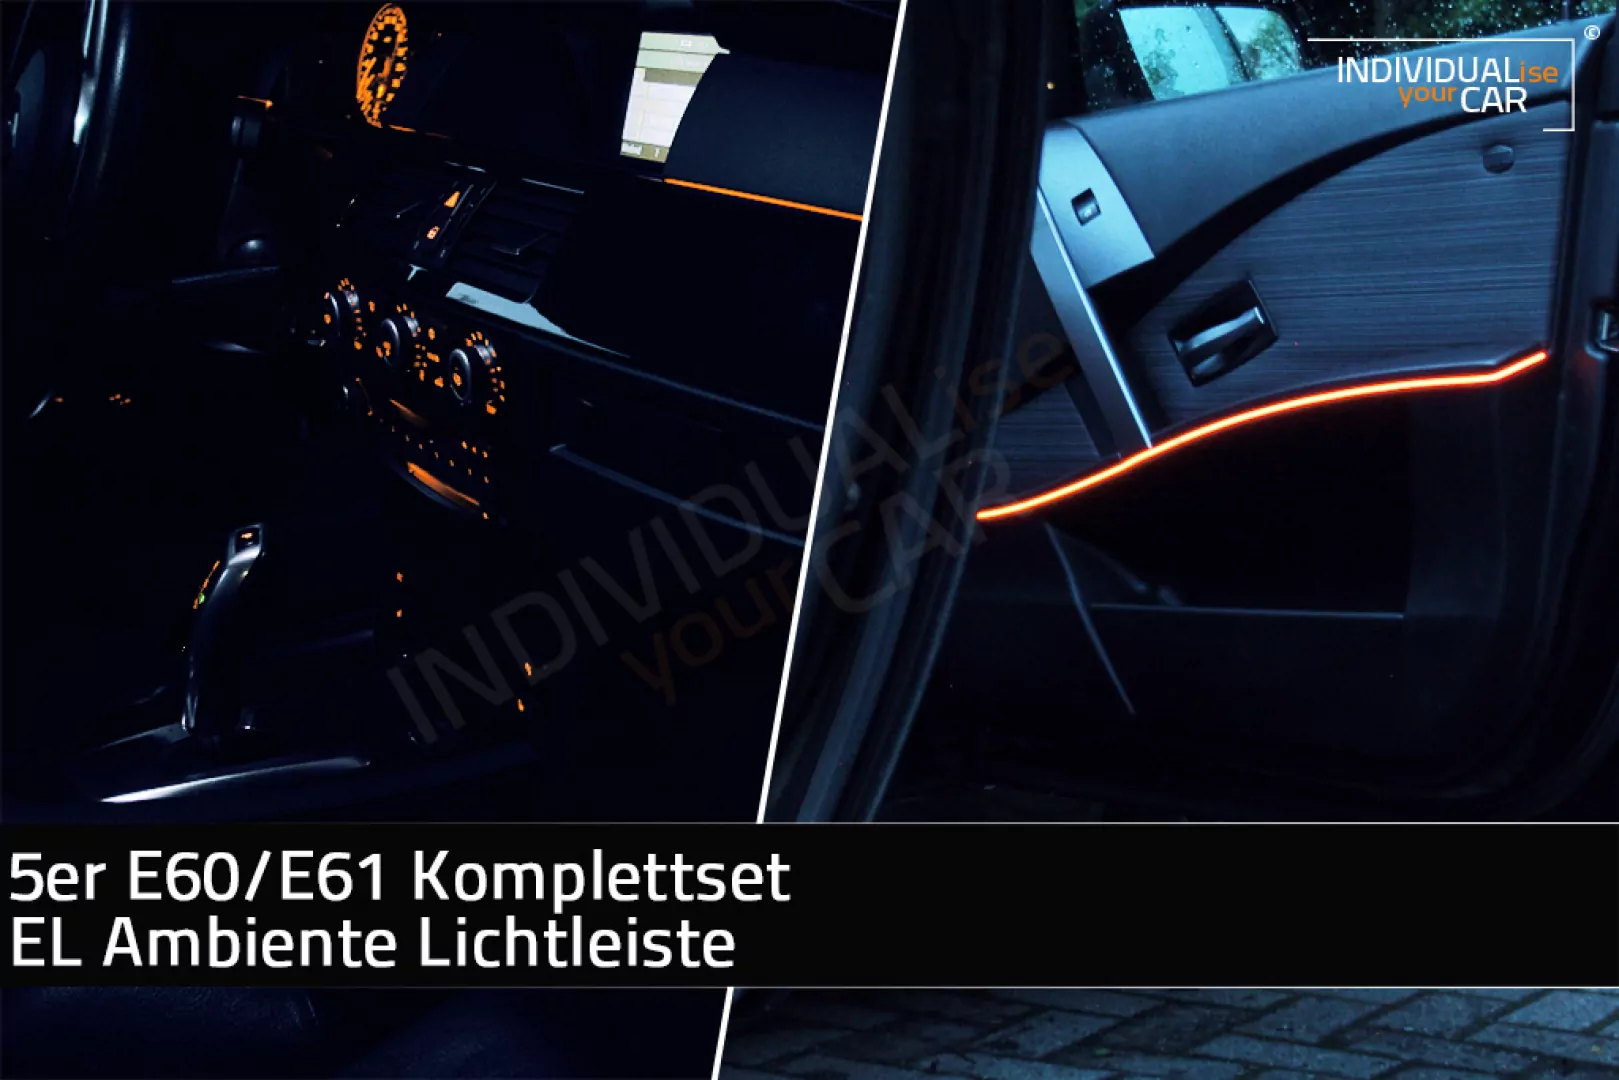 EL Ambiente Lichtleiste Ambientebeleuchtung für BMW 5er E60 E61 - Komplettset